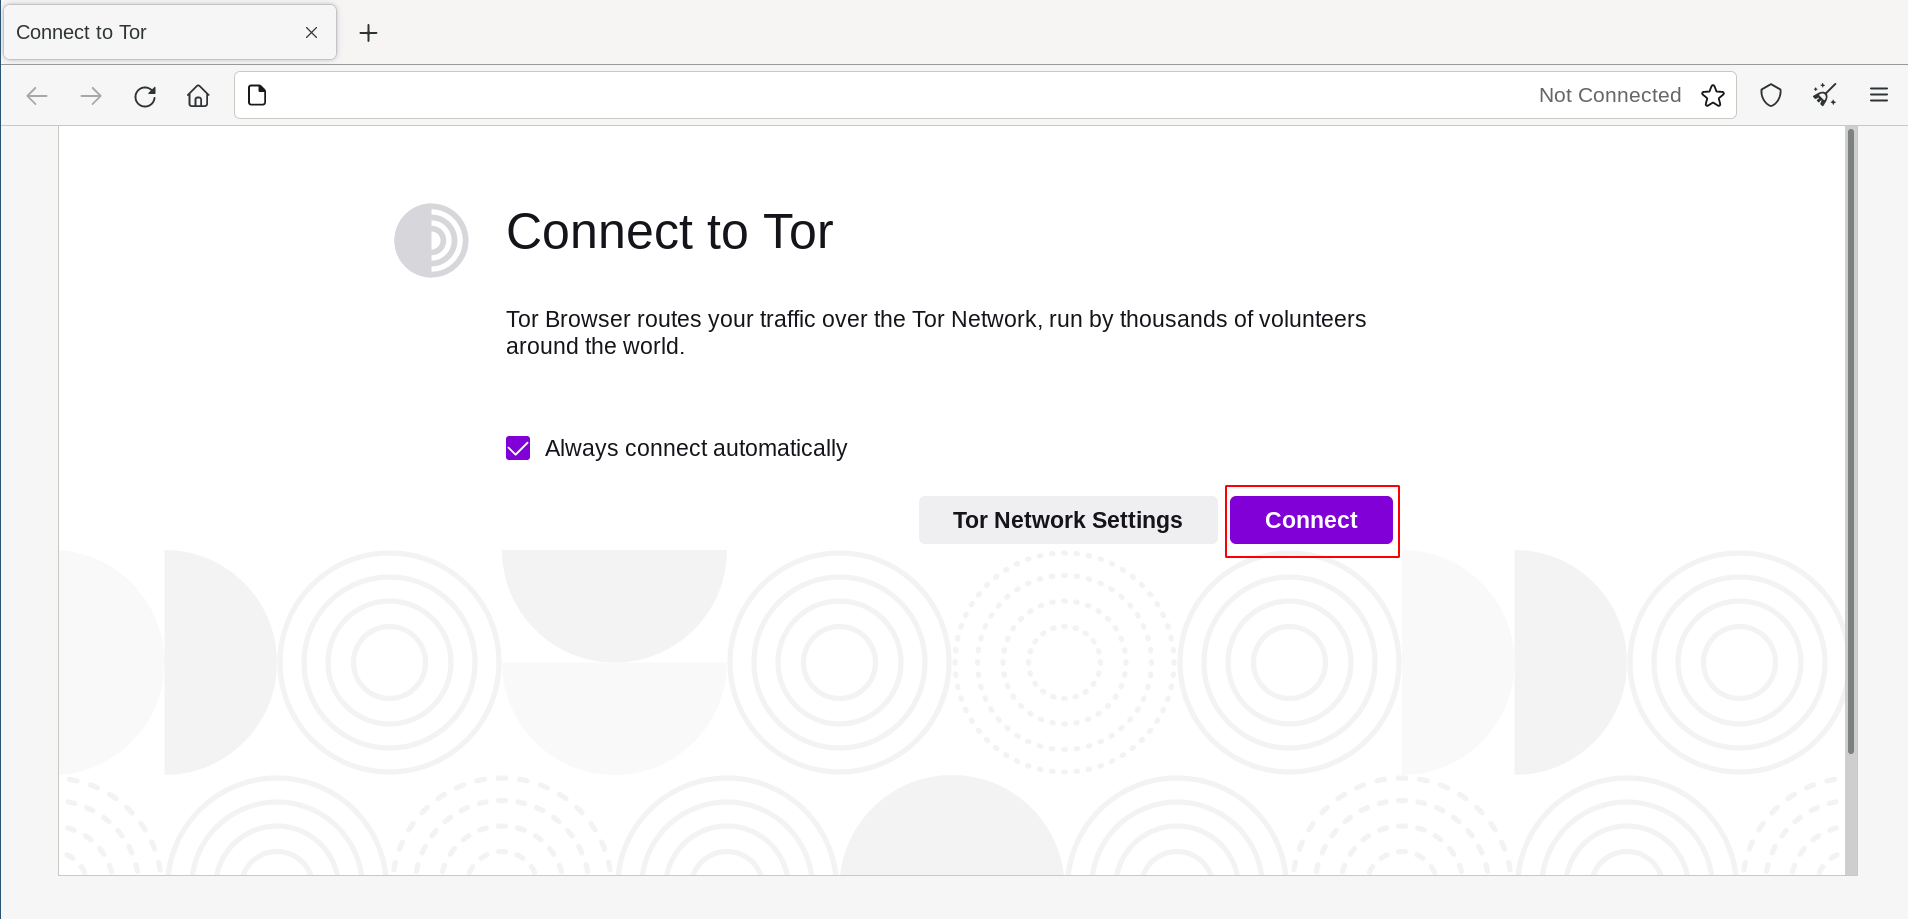 Apasă 'Conectare' pentru a te conecta la Tor.